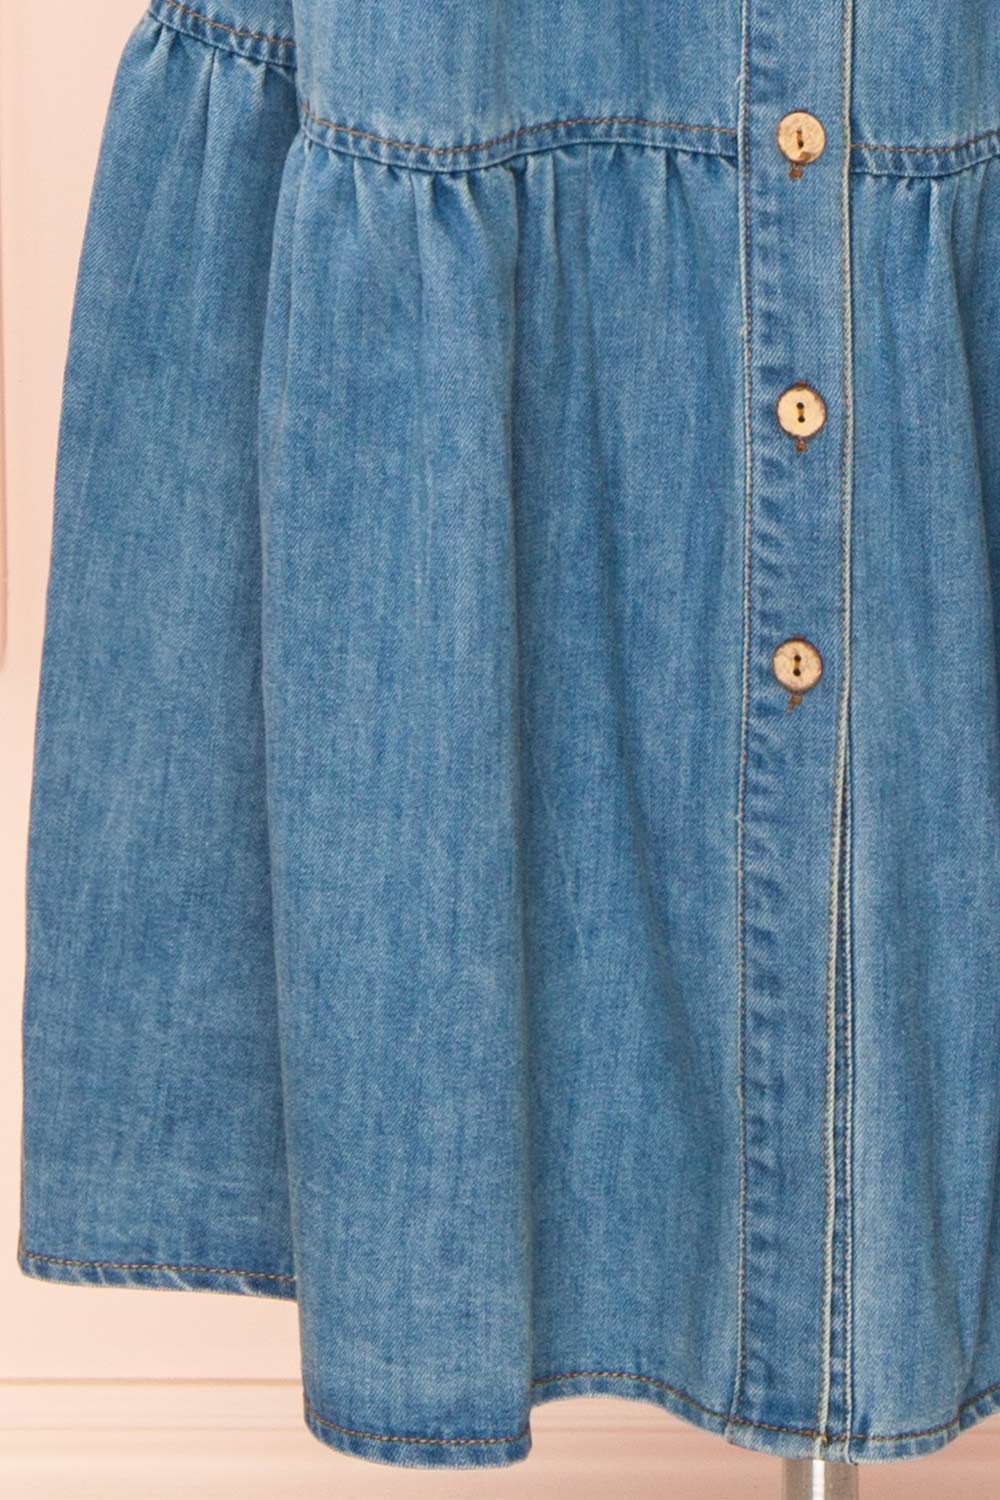 Moprina Long Blue Denim Dress w/ Pockets | Boutique 1861 bottom